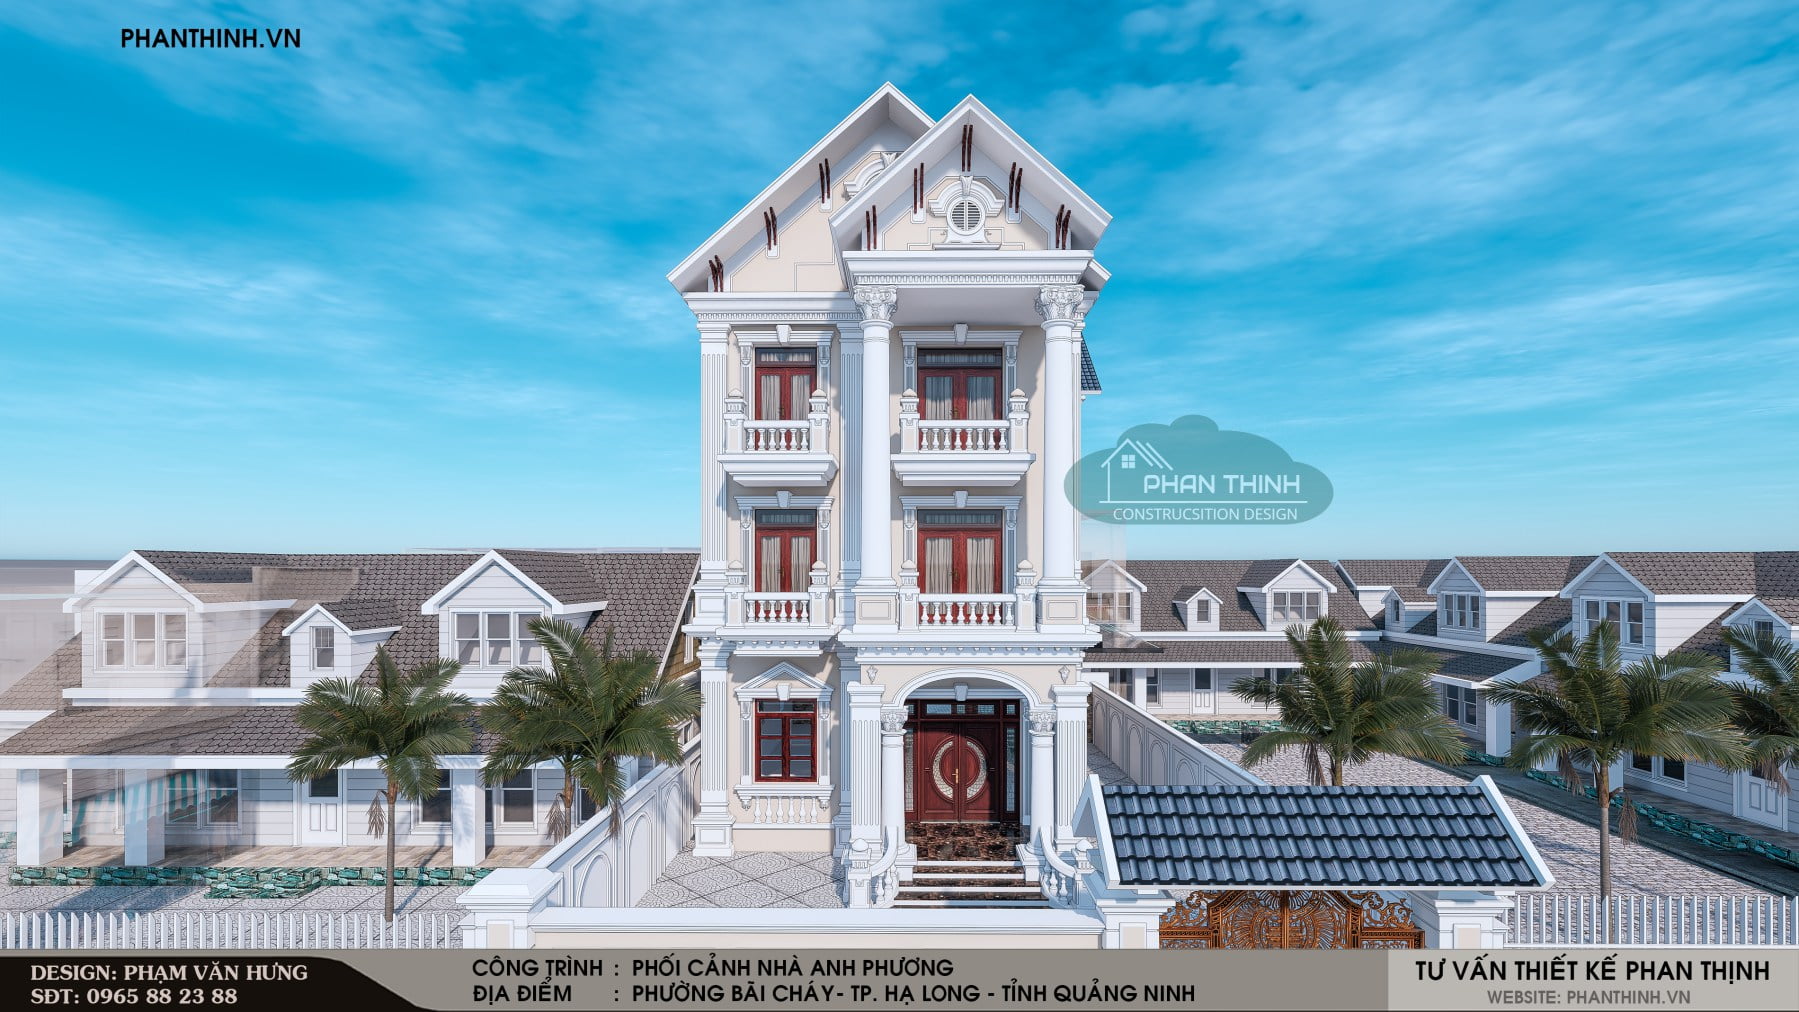 Hình ảnh phối cảnh thiết kế xây dựng căn biệt thự 3 tầng cổ điển tại Quảng Ninh